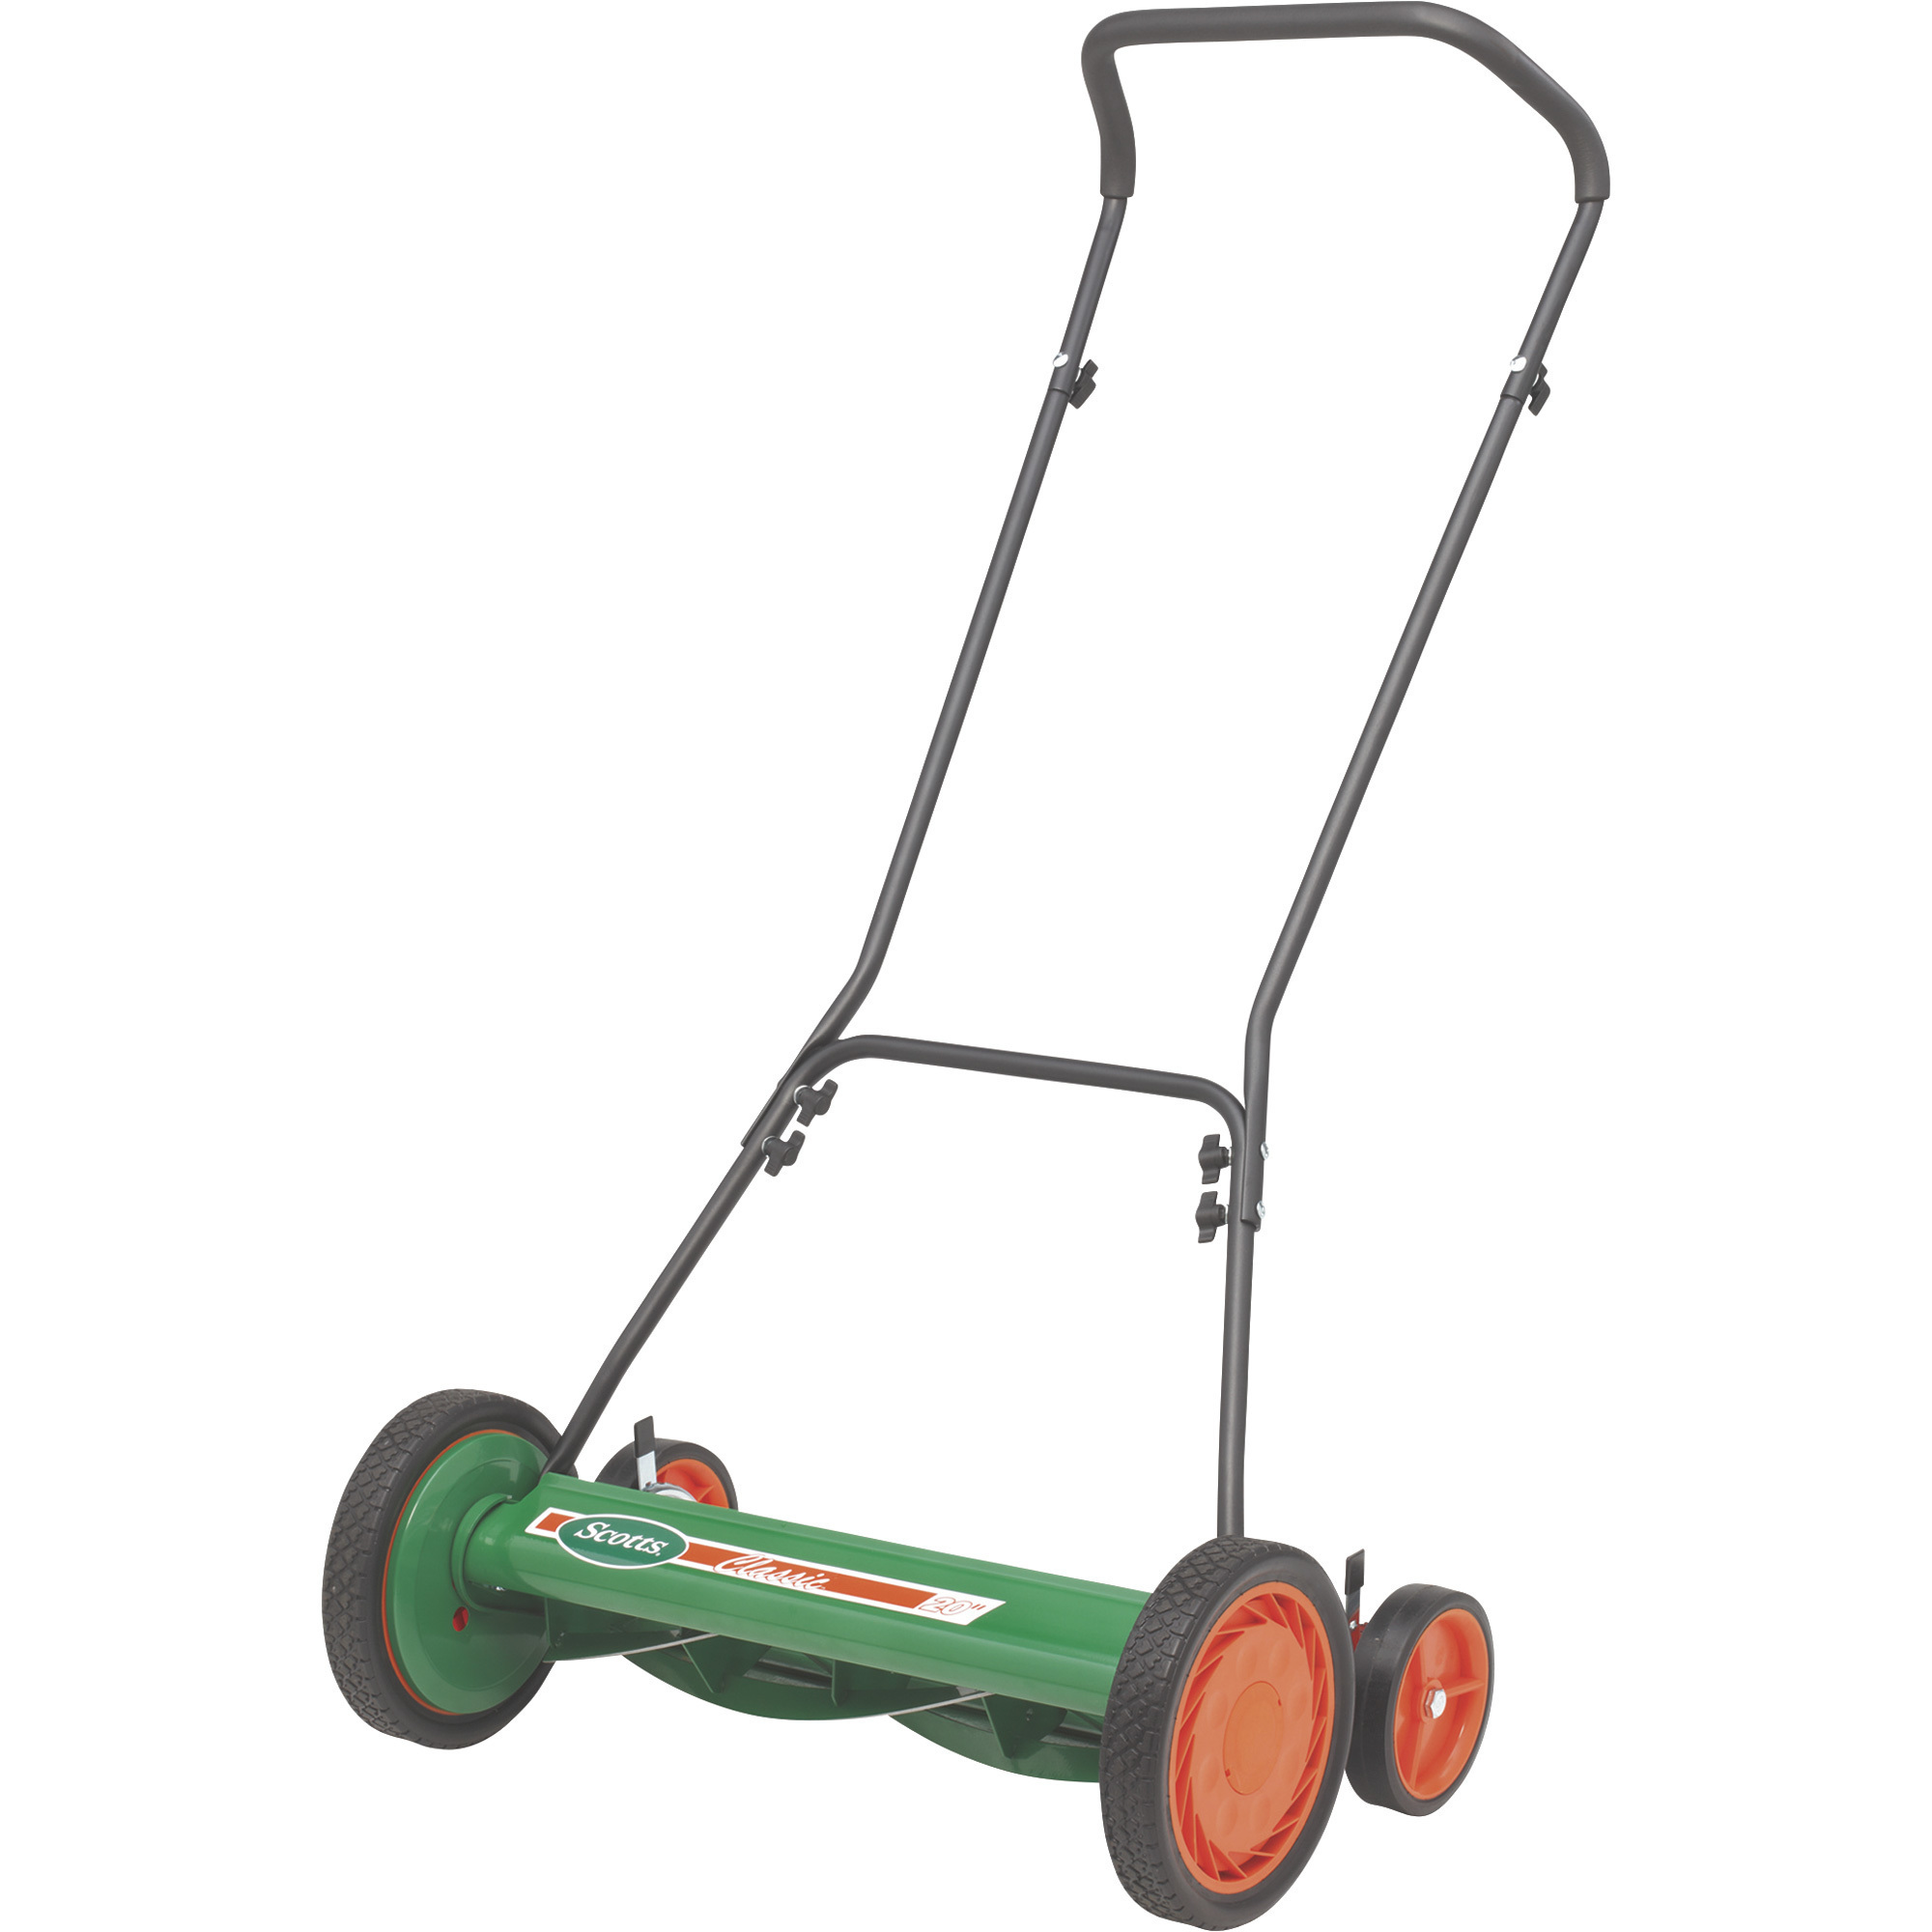 Scotts Manual Lawn Mower, 20in. Deck, Model# 2000-20